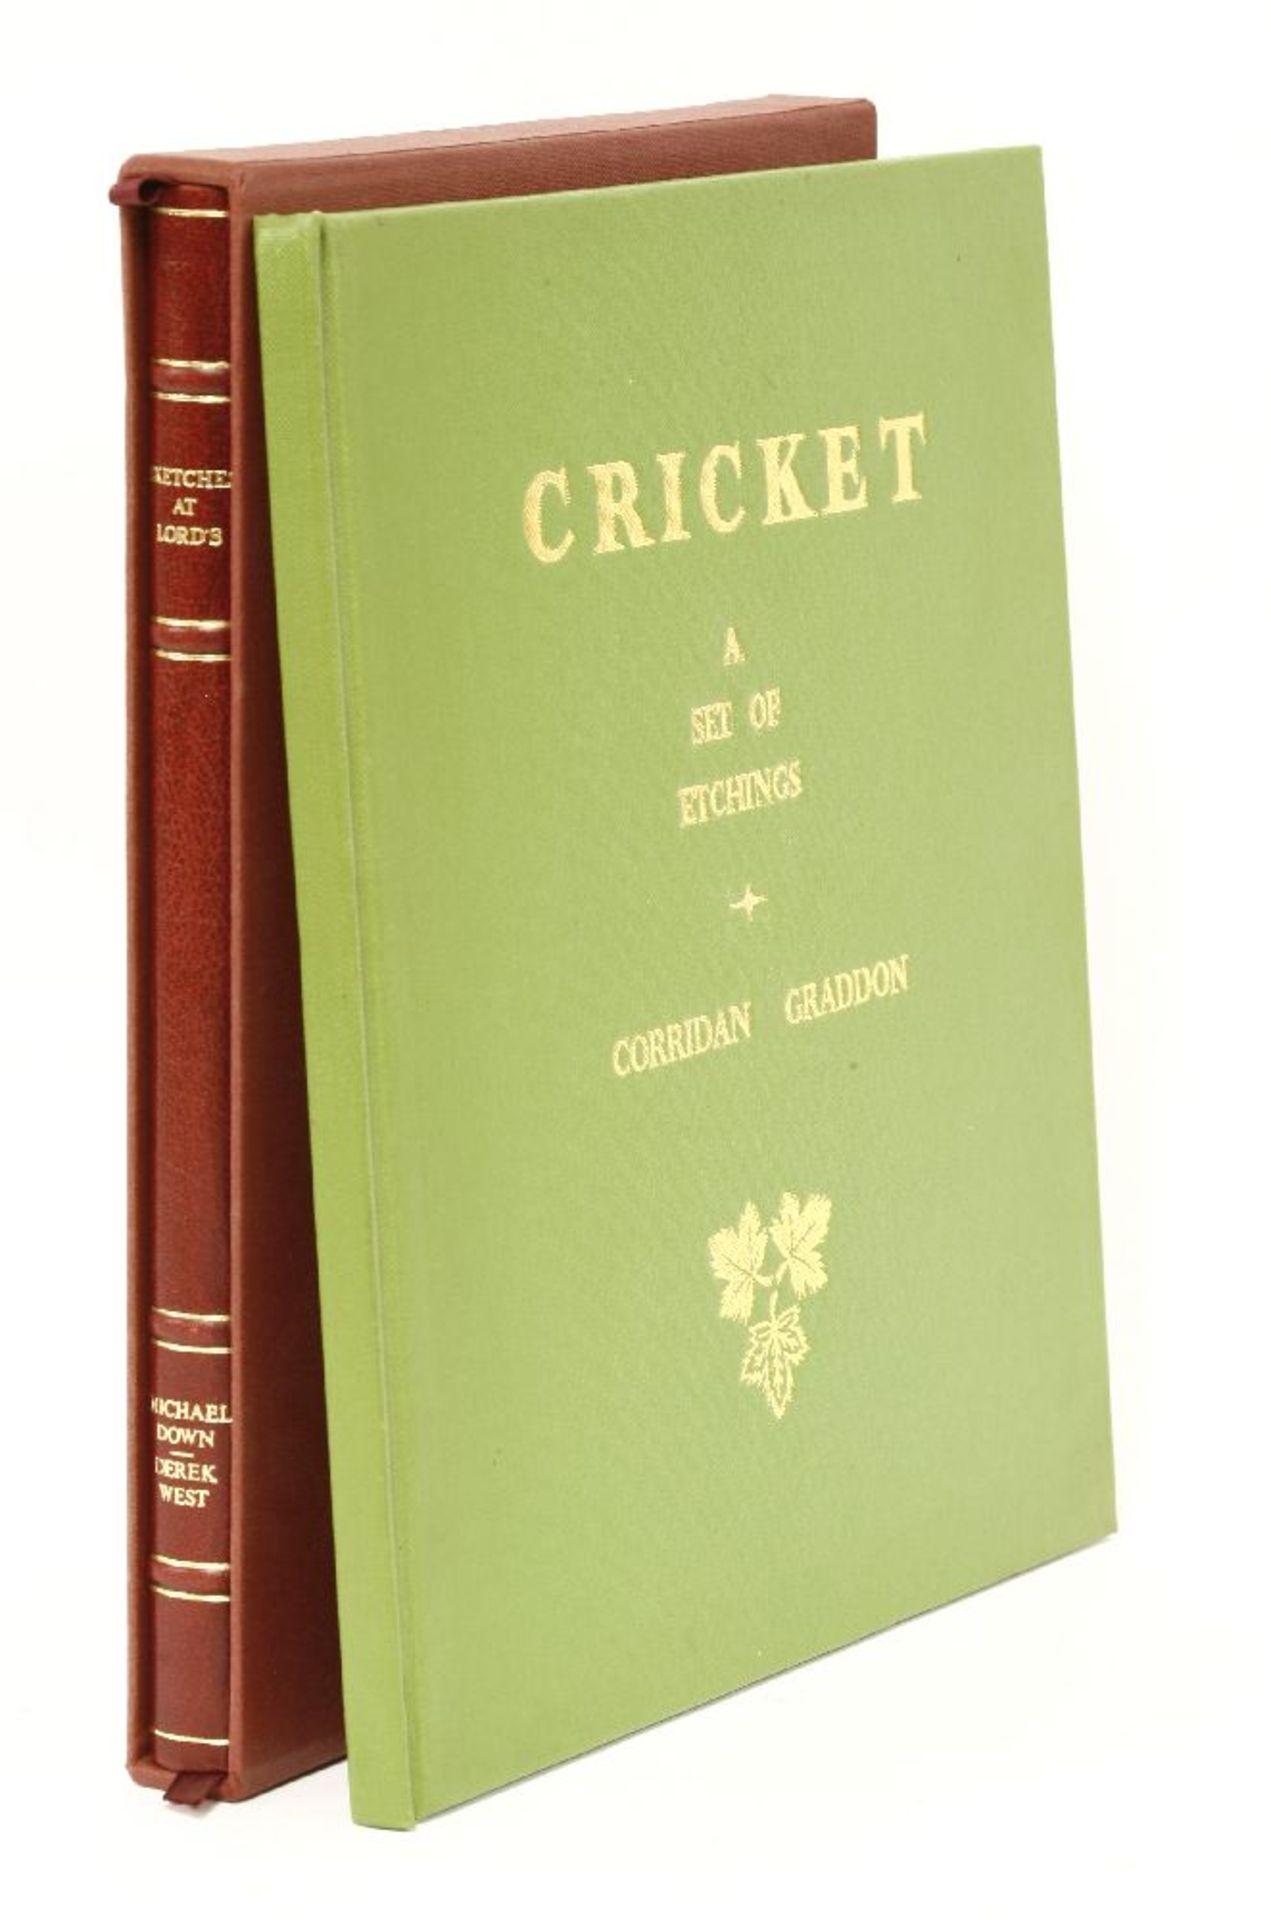 Cricket- Signed copies: 1- Graddon, Corridan: Cricket: A Set Of Etchings. Graddio Press, St. Albans,